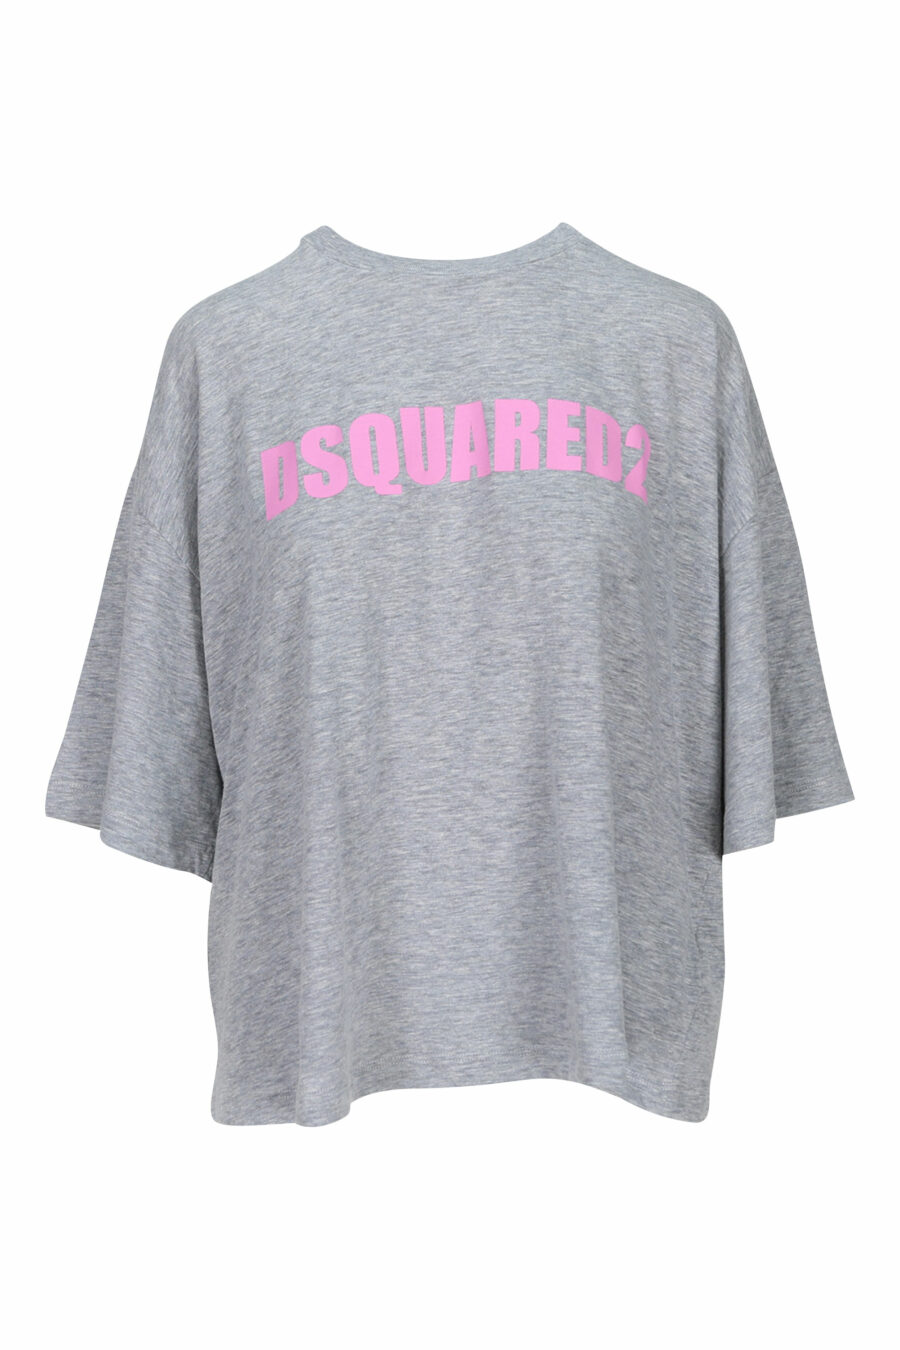 Oversize grey t-shirt with pink maxilogue - 8054148109882